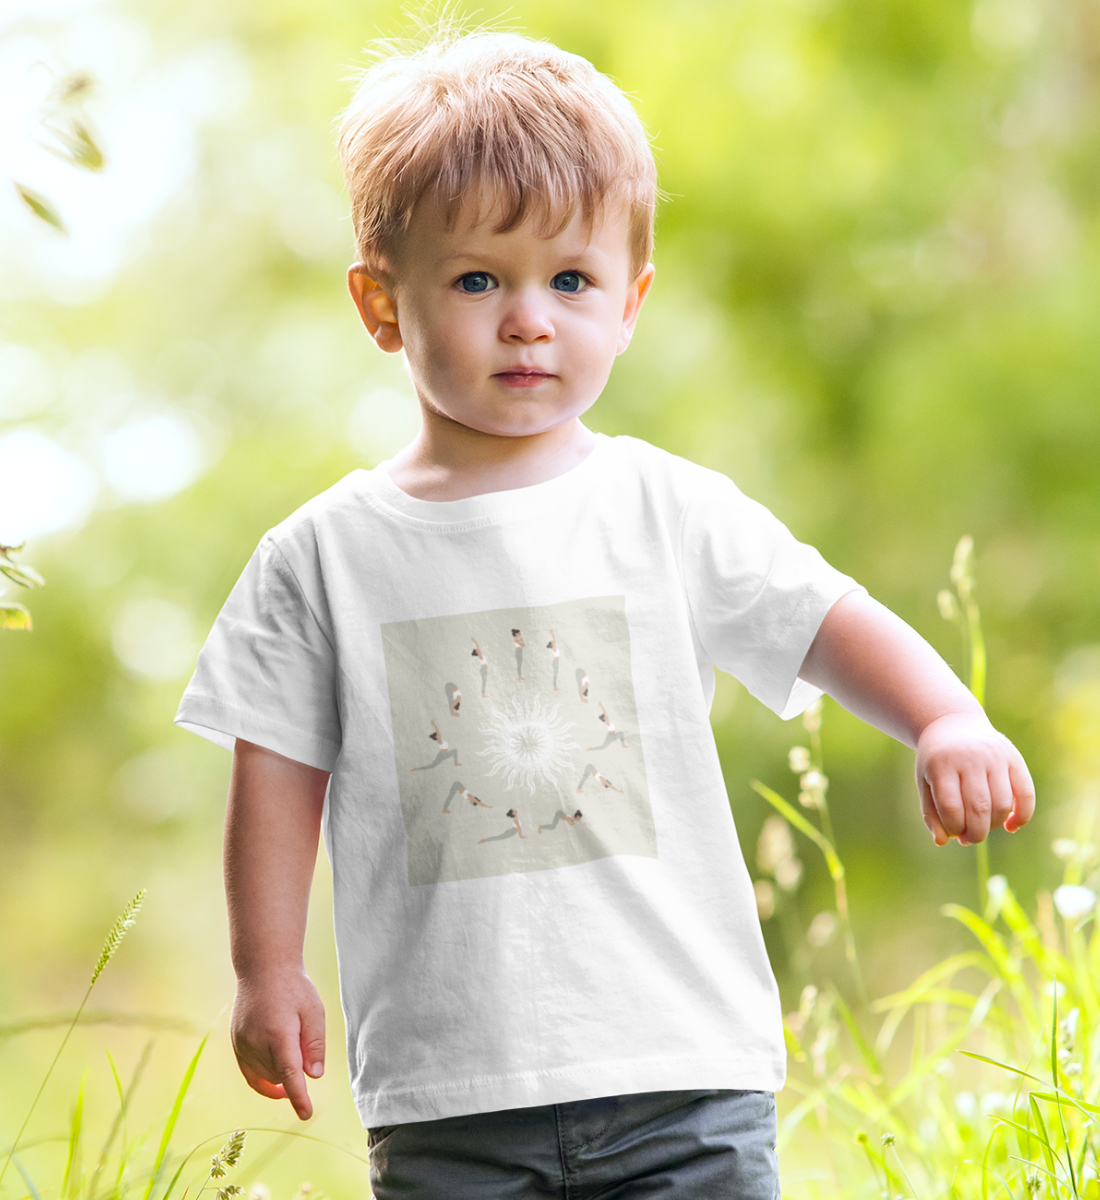 sonnengruß ll l bio t-shirt l nachhaltiges t-shirt l kinder kleidung l nachhaltige kleidung kinder l umweltfreundliche mode dank natürlichen materialien